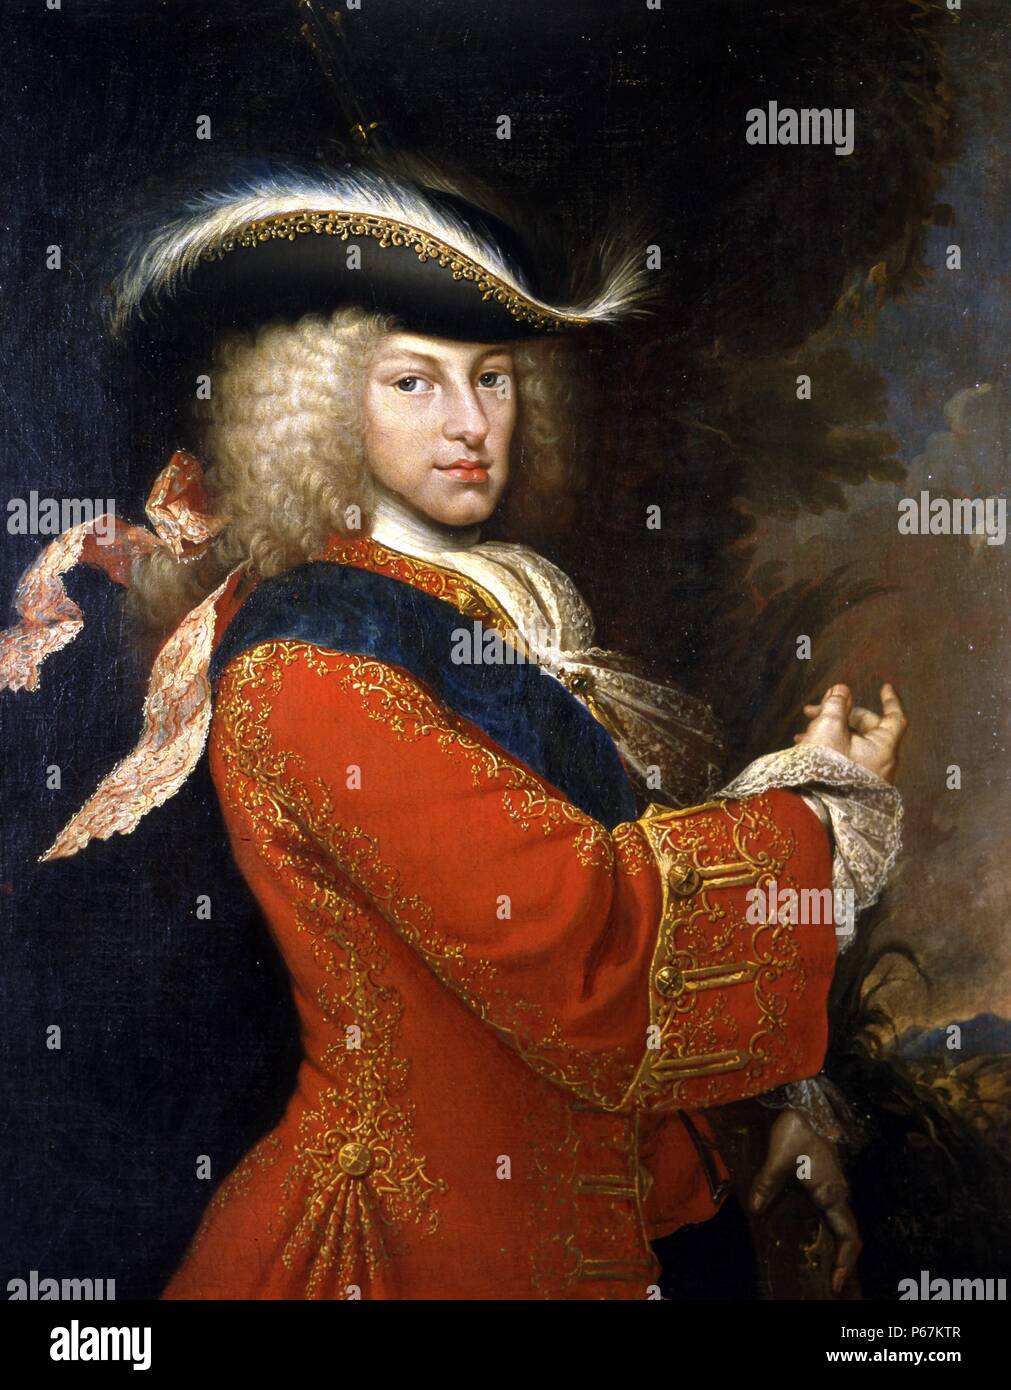 Portrait de Philippe V d'Espagne (1683-1746). Par Miguel Jacinto Meléndez (1679-1734) peintre espagnol. En date du 18e siècle Banque D'Images